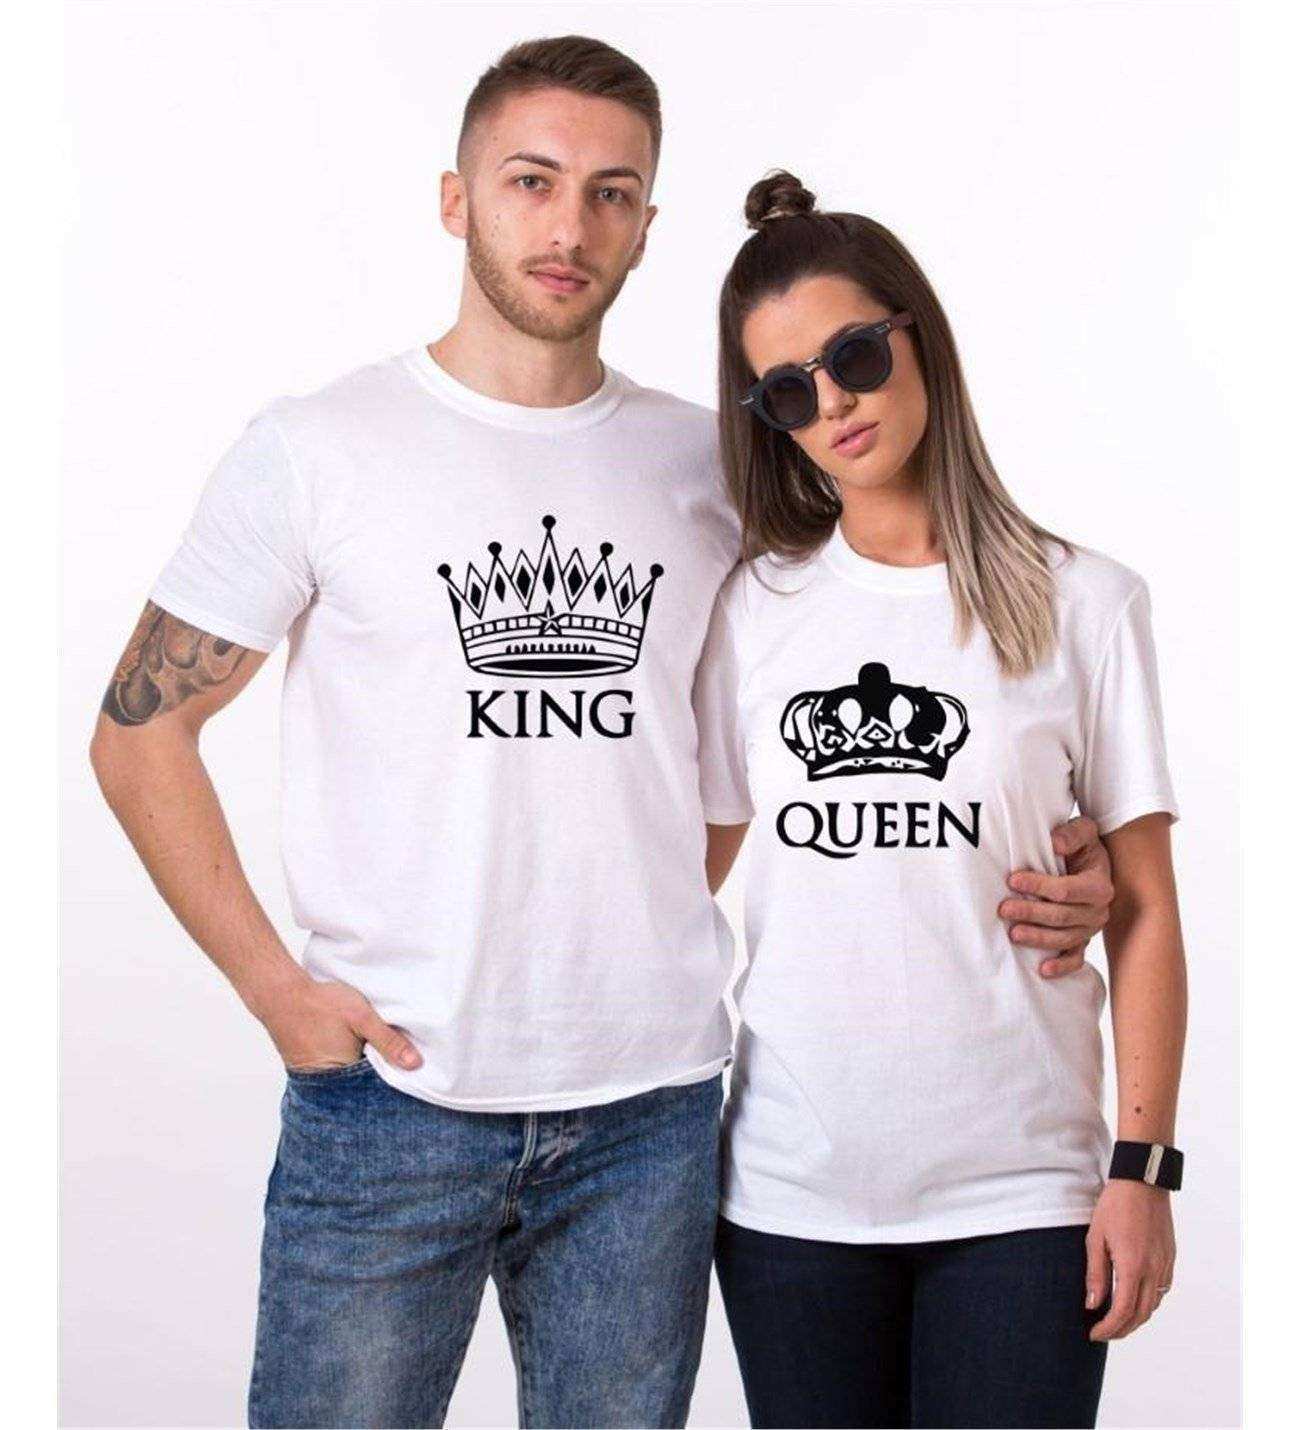 Tshirthane Taç King Queen Sevgili Kombinleri Tshirt Çift Kombini